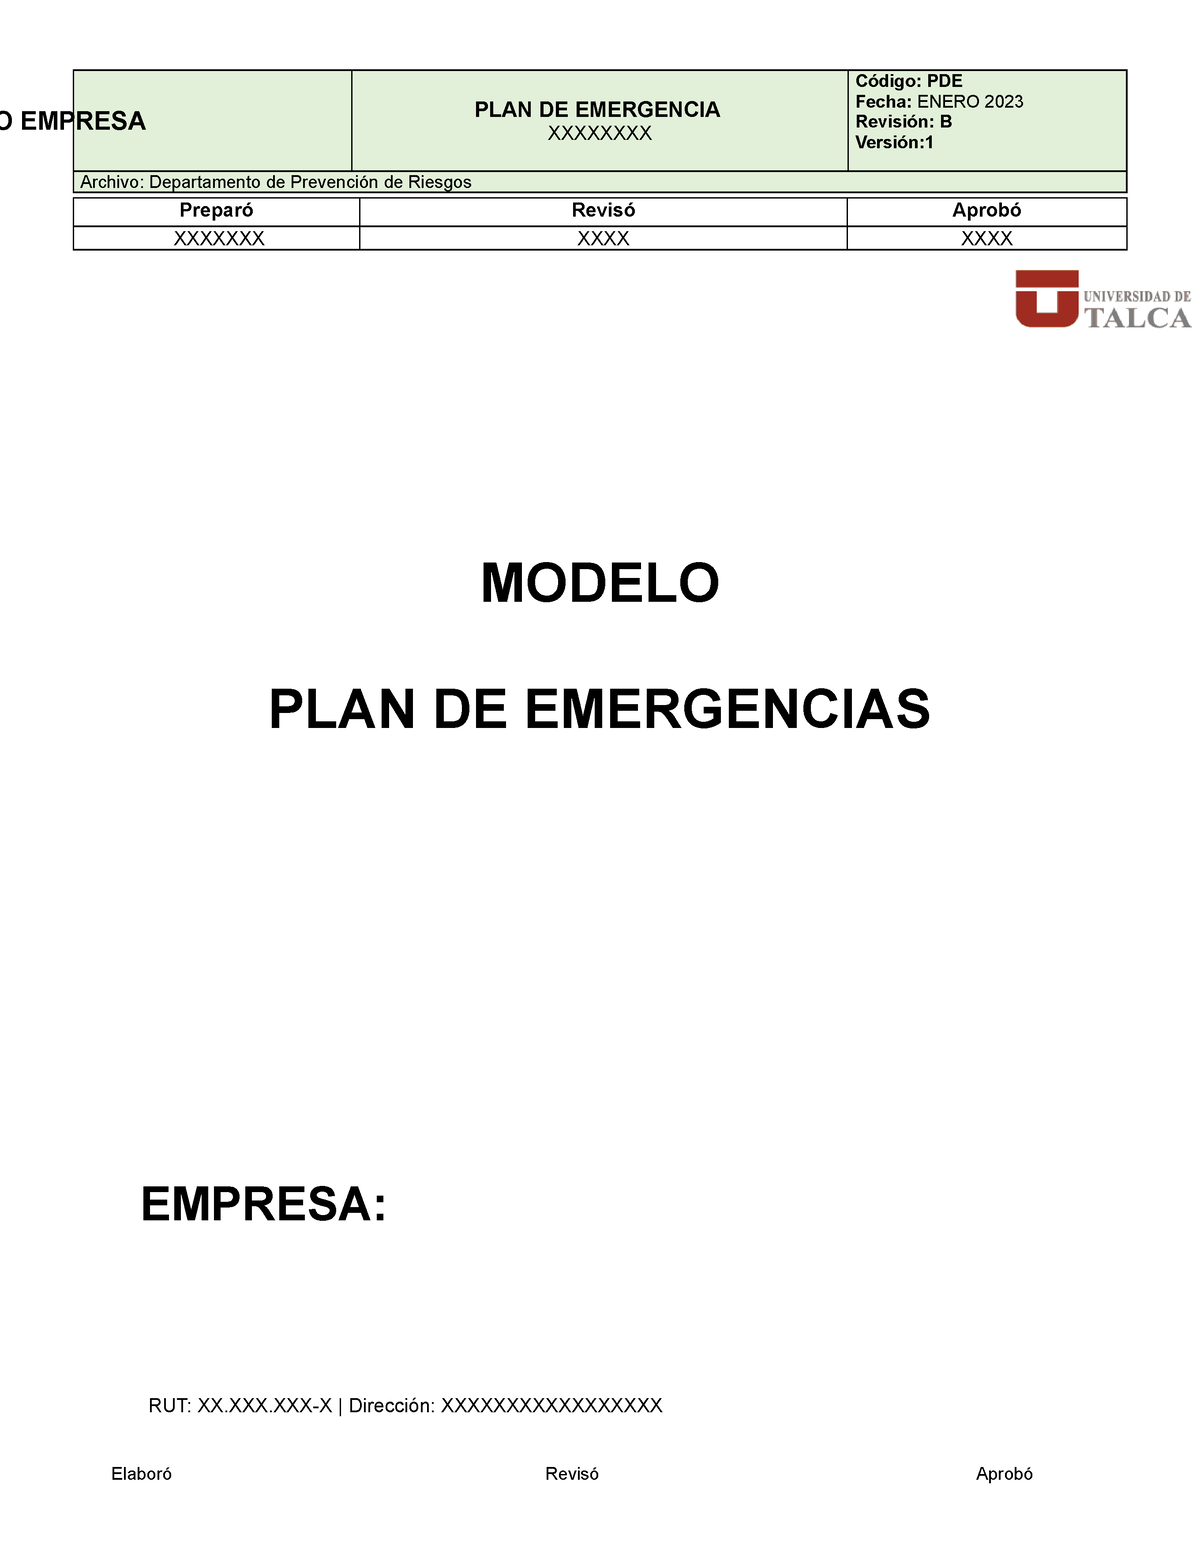 Modelo Plan De Emergencias 2023 V1 Plan De Emergencia Xxxxxxxx Fecha Enero 2023 Revisión B 0871